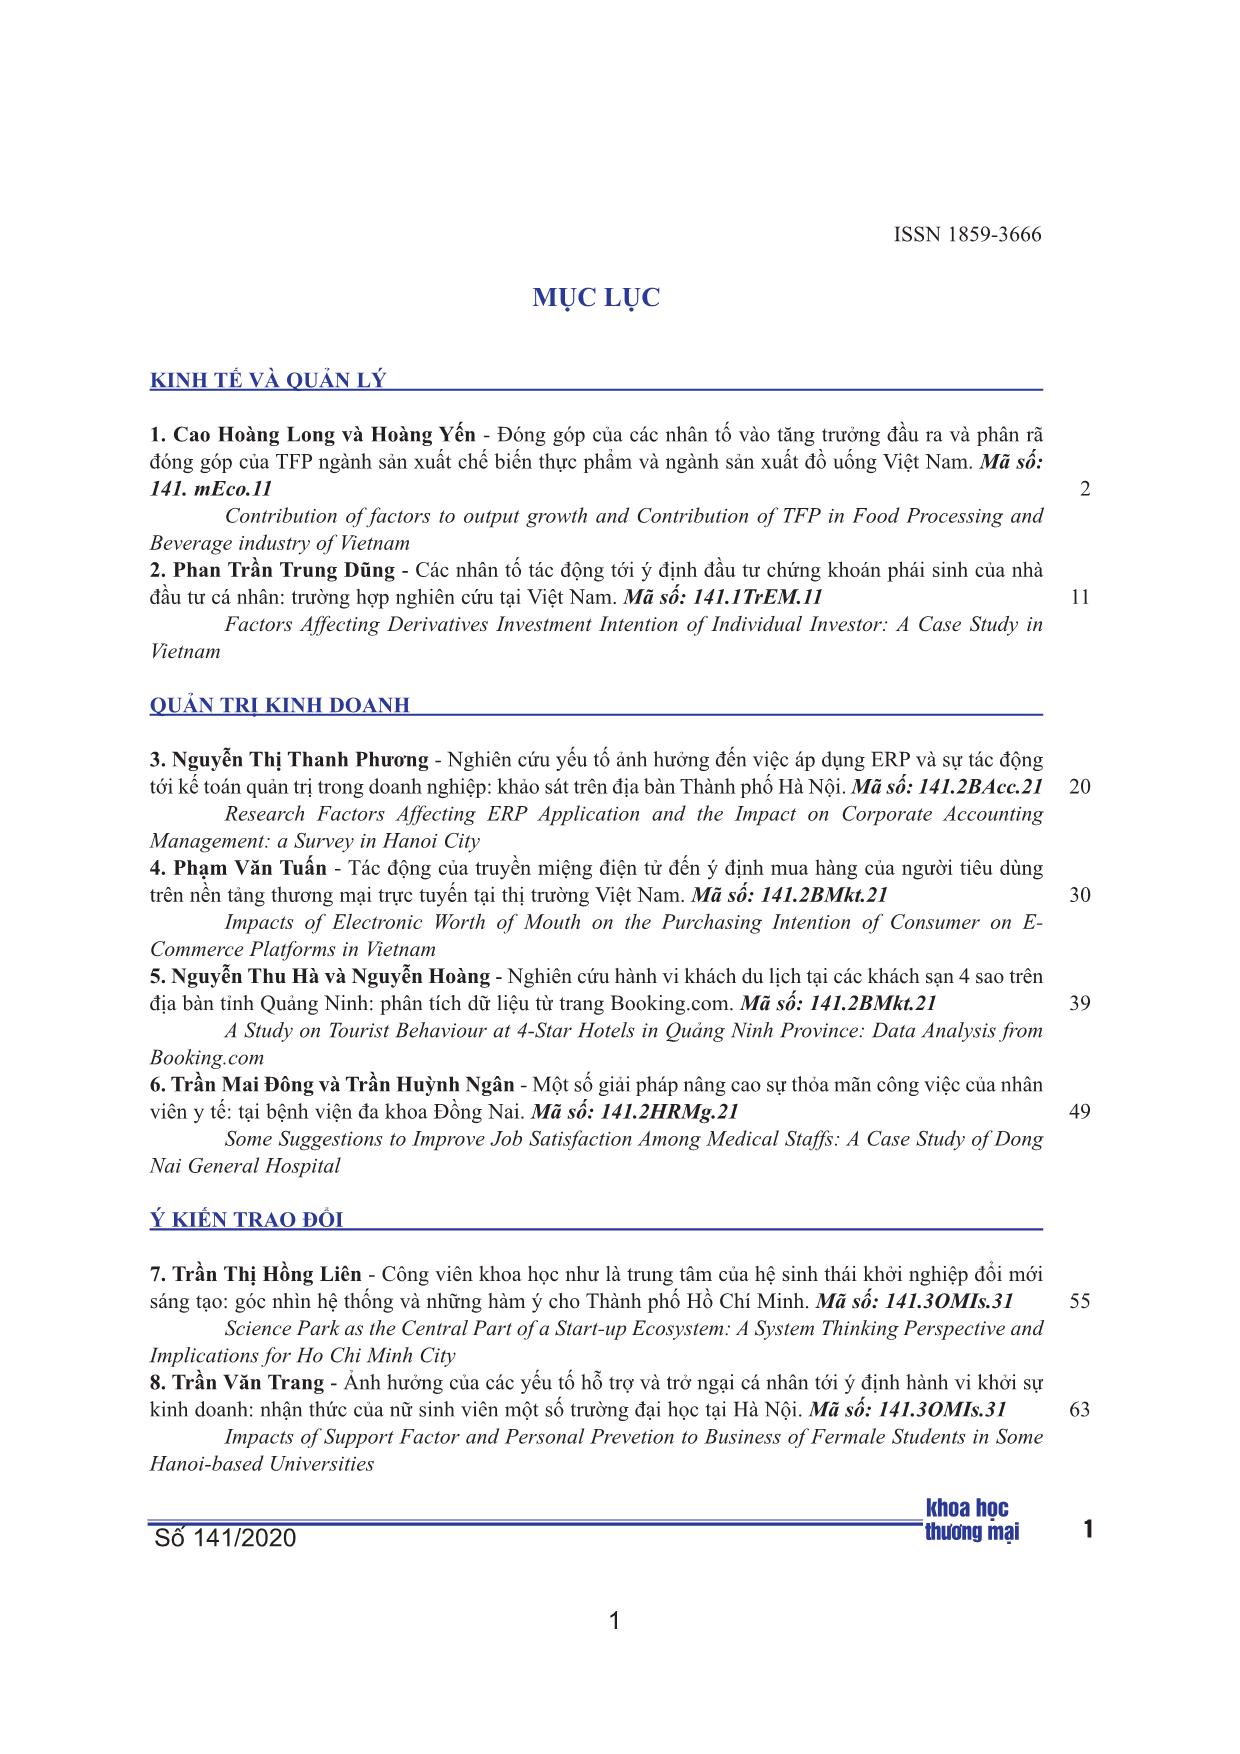 Các nhân tố tác động tới ý định đầu tư chứng khoán phái sinh của nhà đầu tư cá nhân: trường hợp nghiên cứu tại Việt Nam trang 1